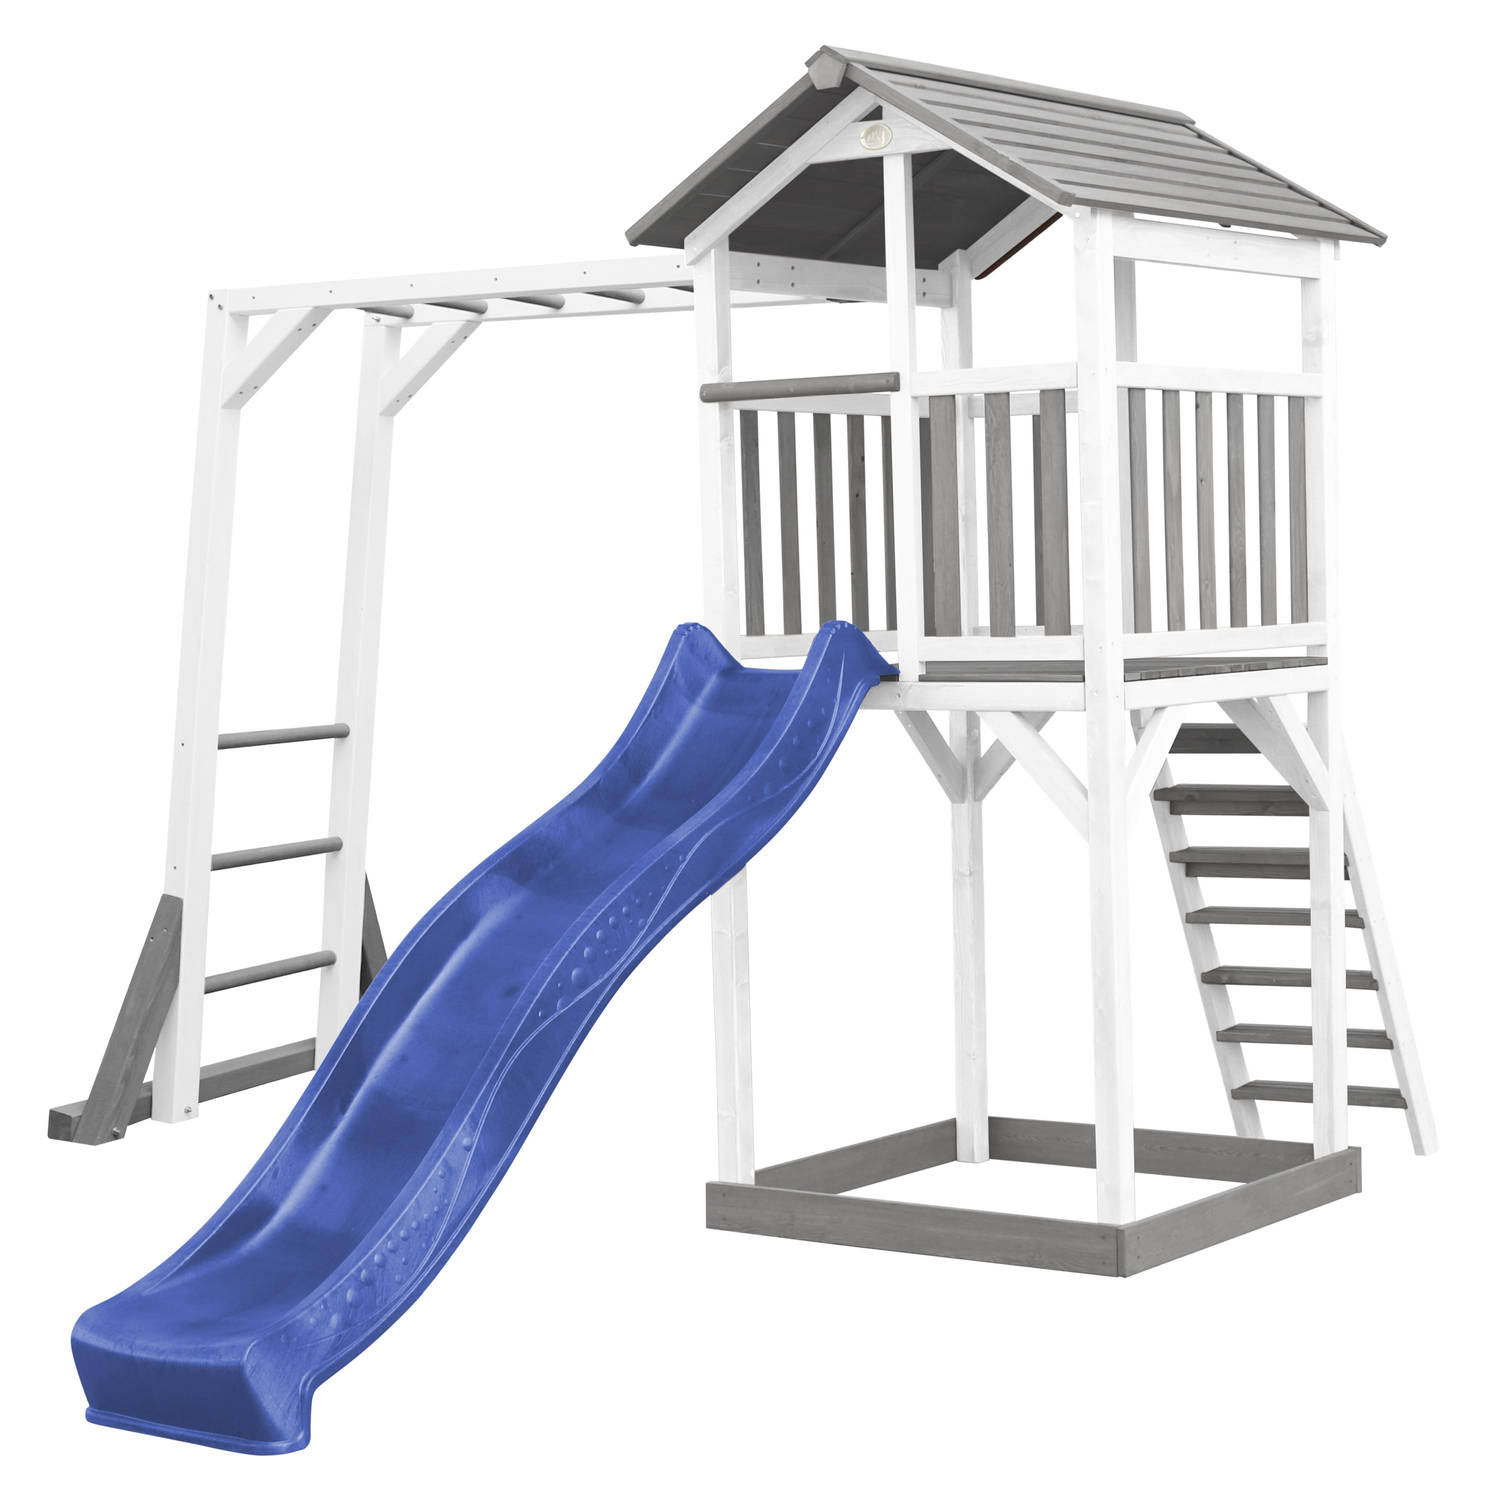 AXI Beach Tower Speeltoestel van hout in Grijs en Wit Speeltoren met zandbak, klimrek en blauwe glijbaan